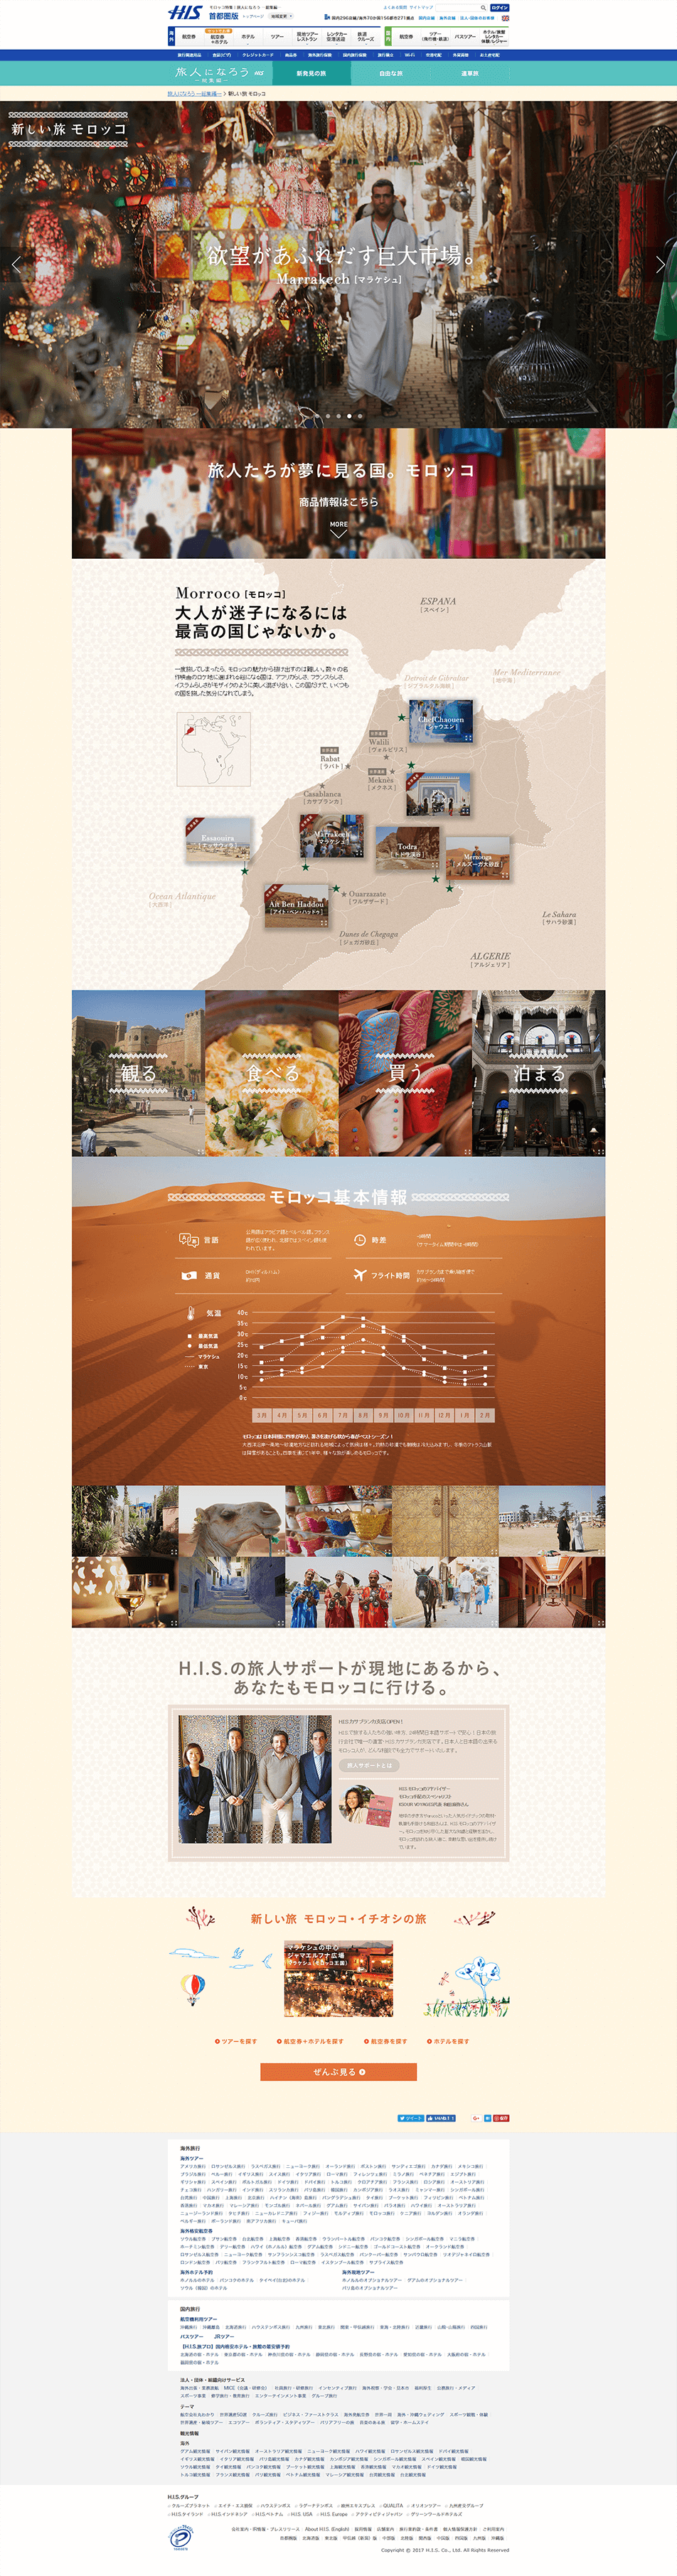 新しい旅モロッコ_pc_1